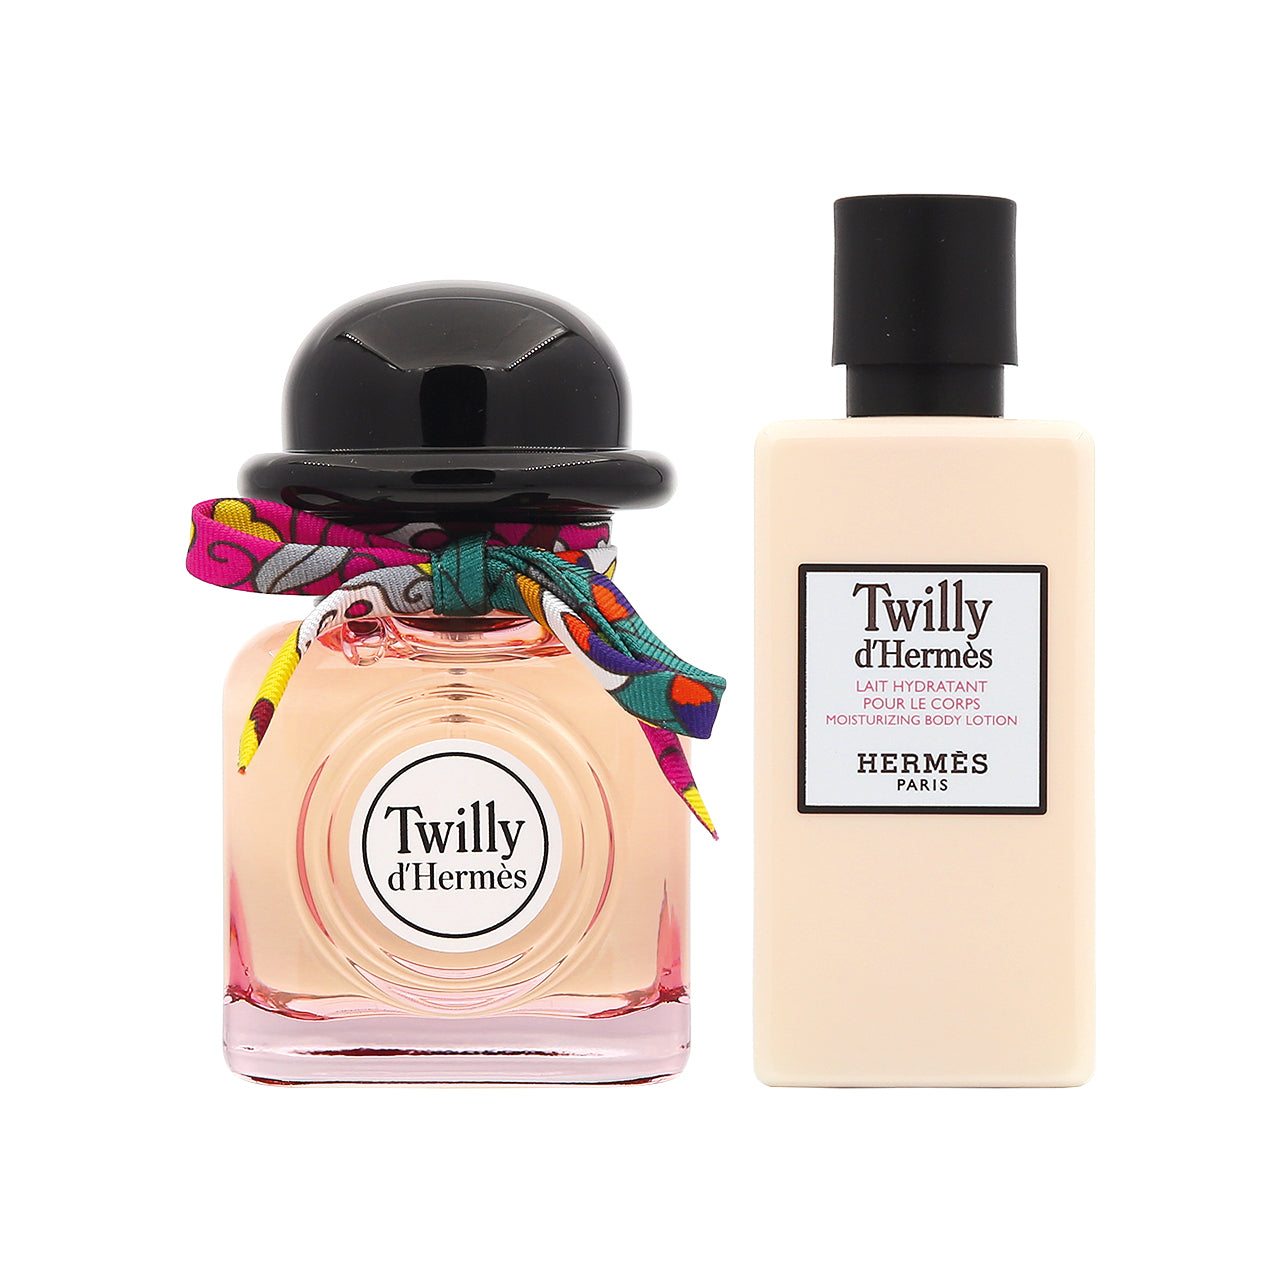 Hermès Twilly d'Hermès Eau de Parfum Gift Set (2pcs) | Sasa Global eShop